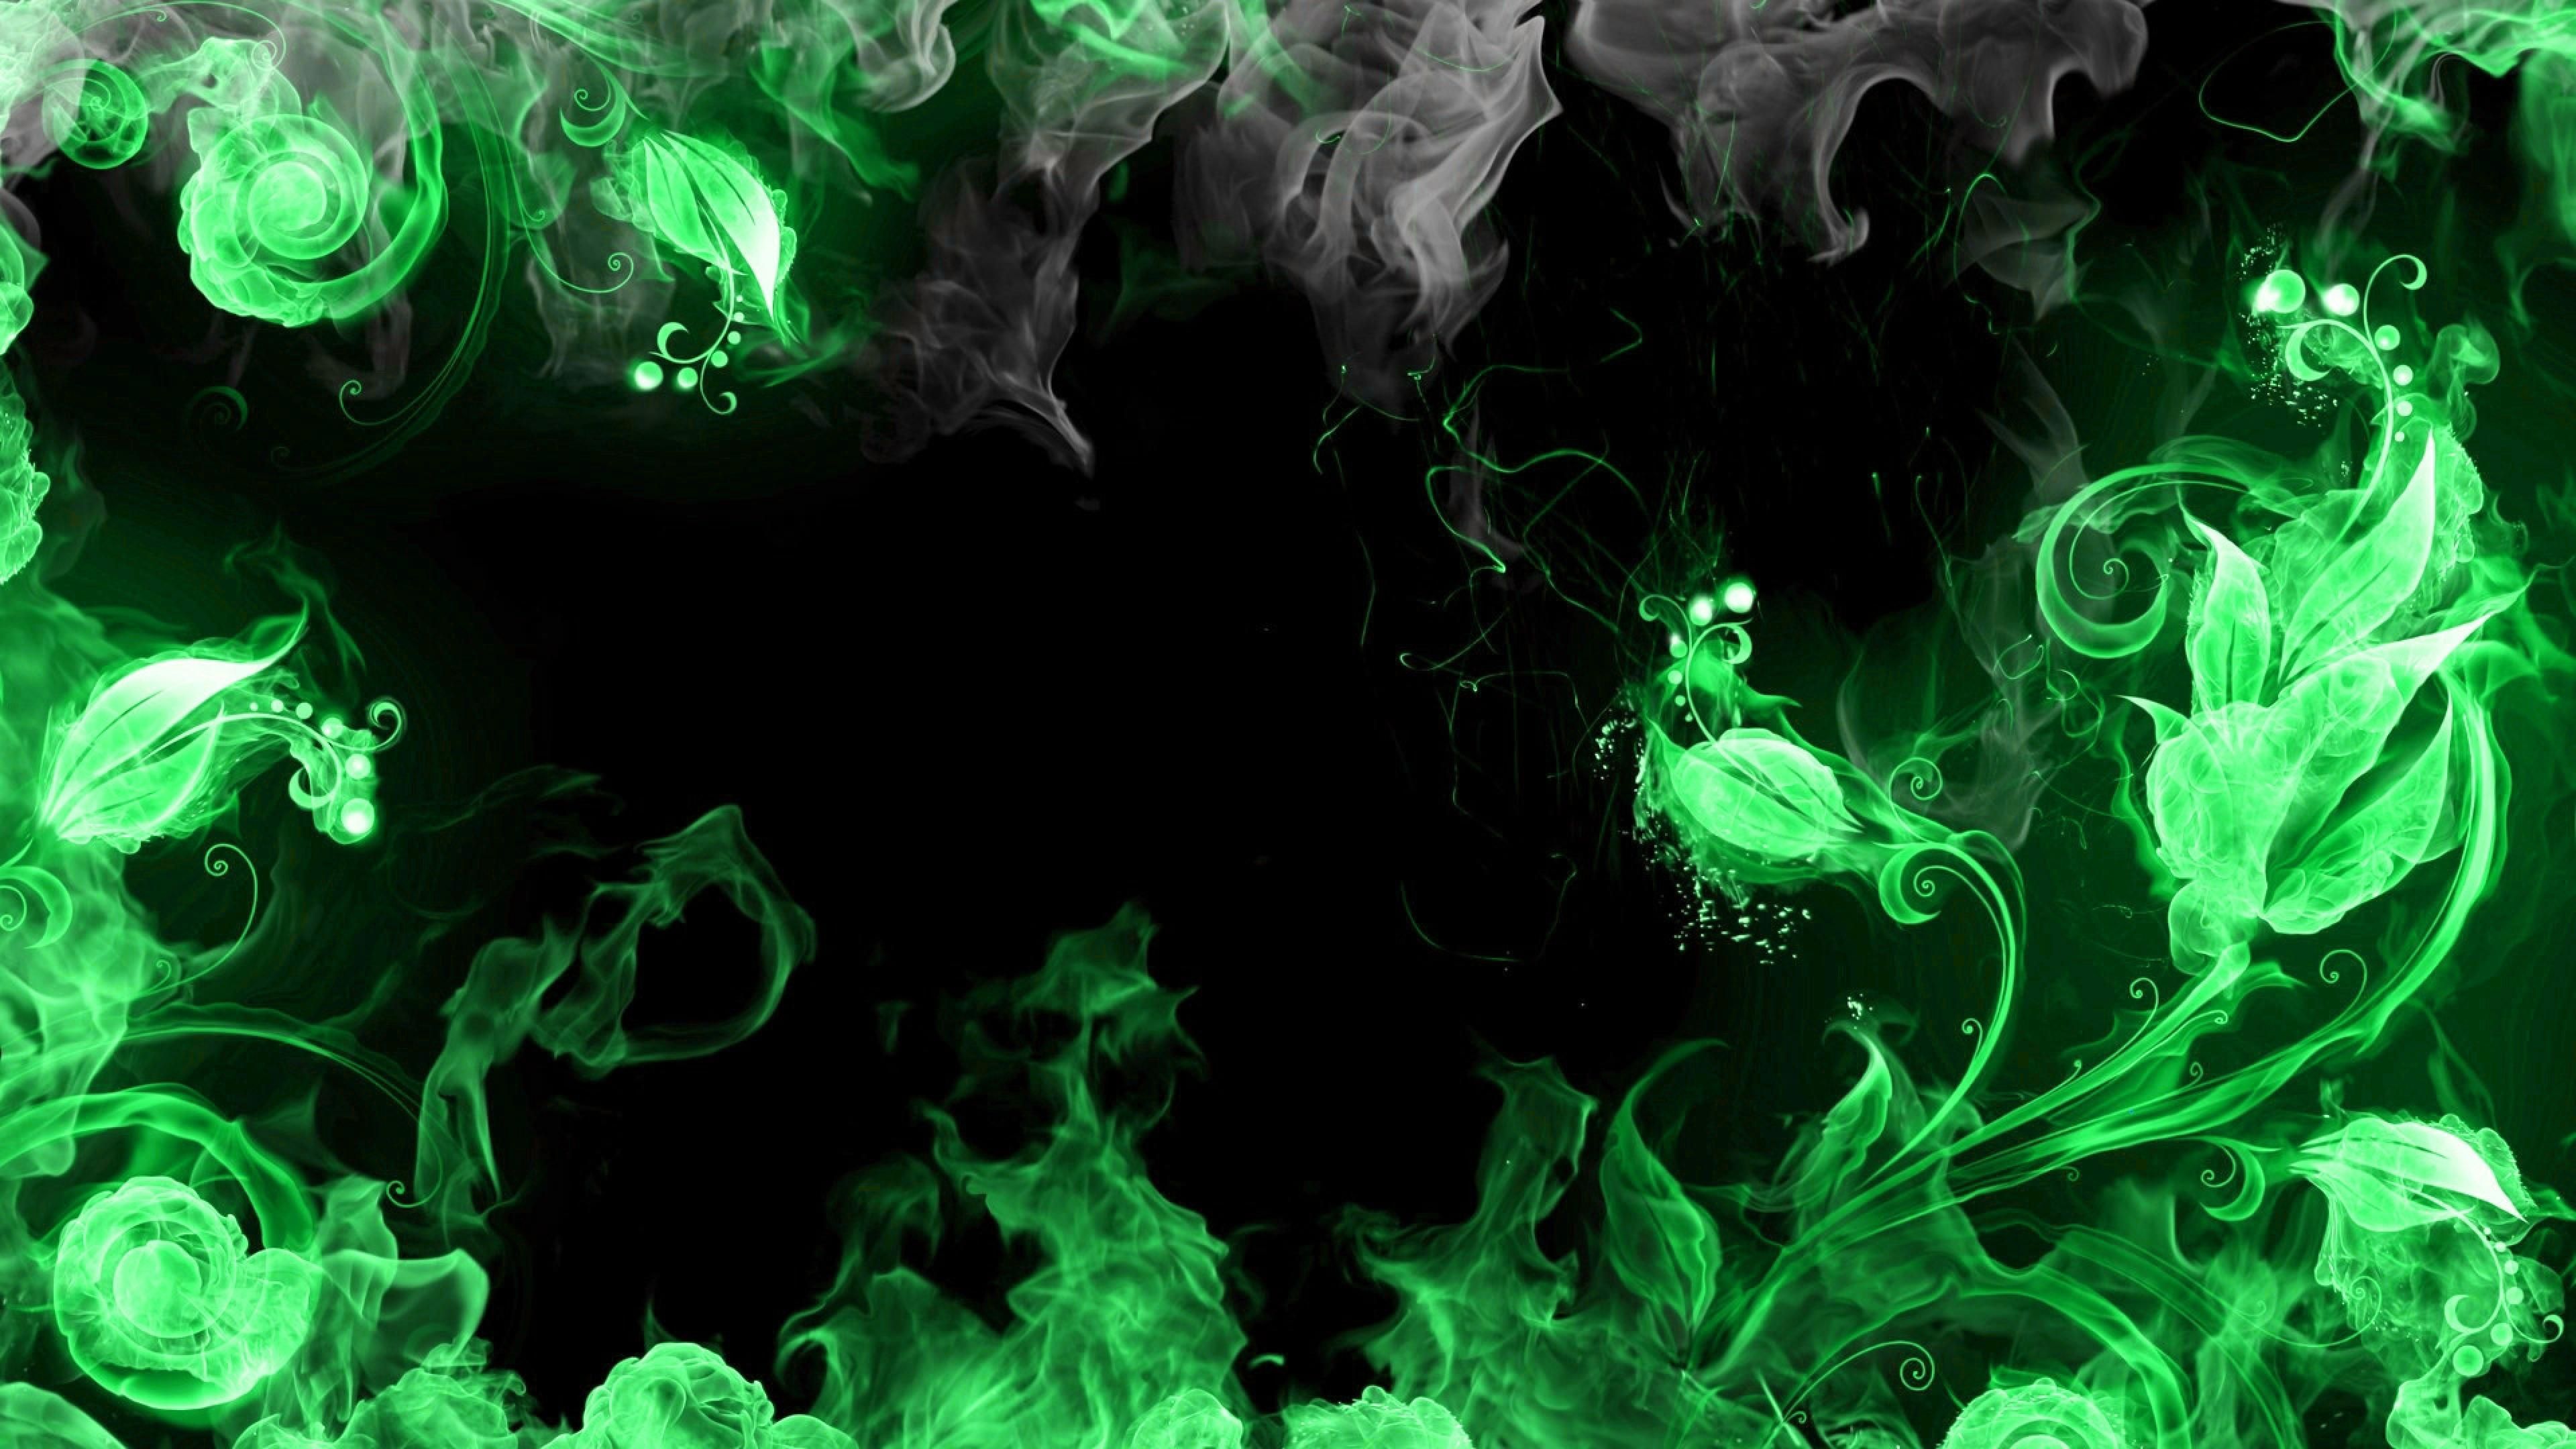 desktophdwallpaper.org. Smoke wallpaper, Fire flower, Fire art